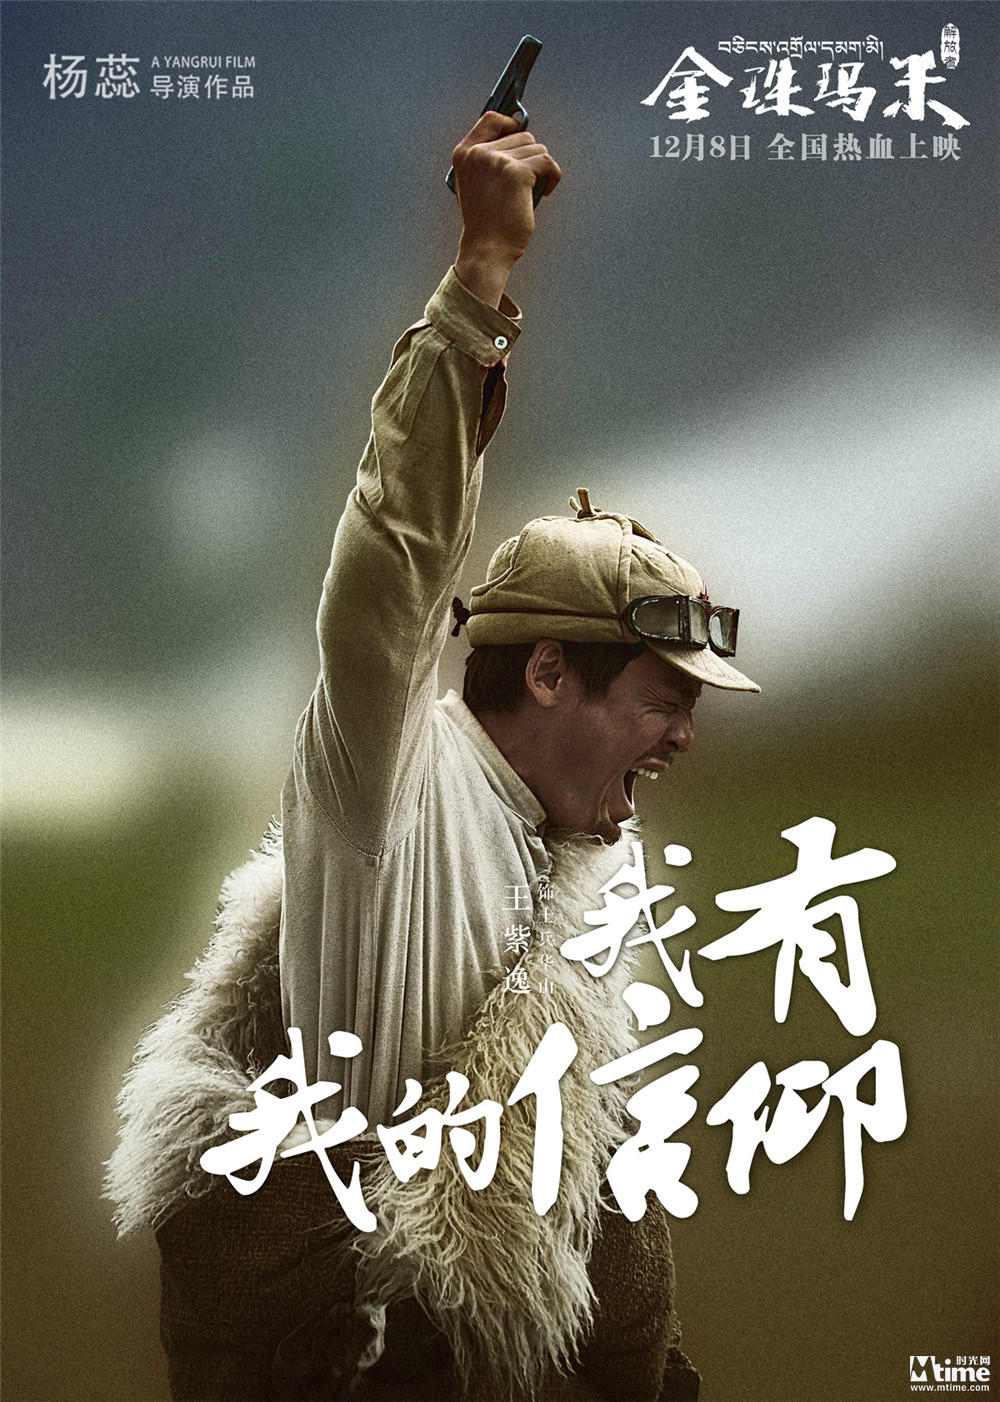 西藏电影《金珠玛米》曝人物剧照 揭开高原战火中的人物命运与纠葛